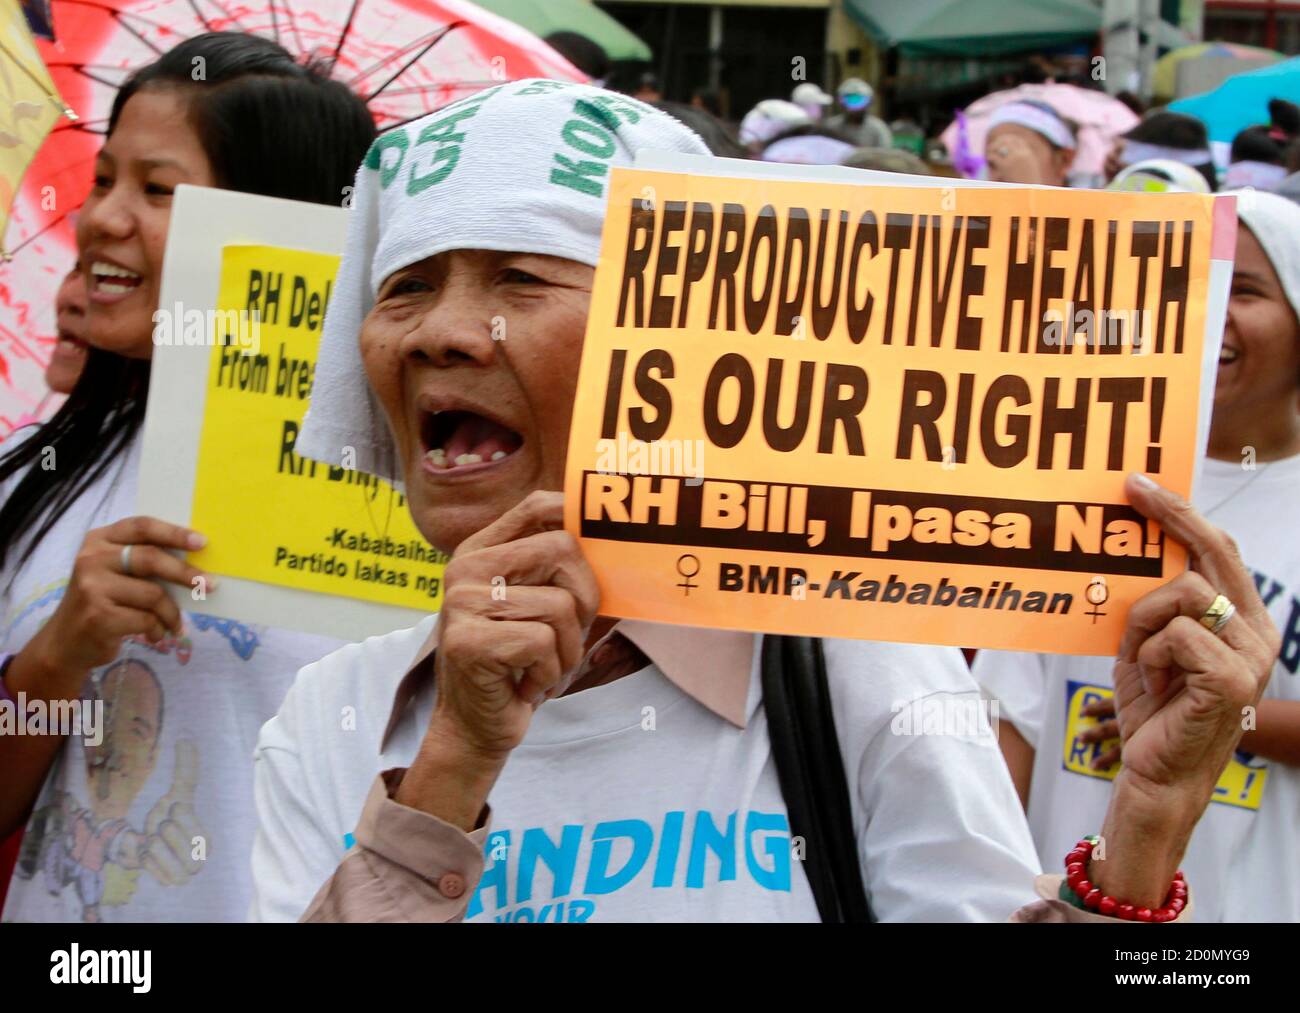 Les partisans du projet de loi sur la santé génésique scandent des slogans alors qu'ils défilent au Congrès philippin lors des célébrations de la Journée internationale de la femme à Quezon, dans la ville métropolitaine de Manille, le 8 mars 2011. Les législateurs de la chambre basse du Congrès philippin entamera le débat sur la mesure proposée en matière de santé reproductive, en encourageant l'utilisation des contraceptifs, y compris les préservatifs, mais les évêques catholiques romains conservateurs devraient s'opposer à ce projet de loi, ont rapporté les médias locaux. REUTERS/Erik de Castro (PHILIPPINES - Tags: SOCIÉTÉ DE LA SANTÉ) Banque D'Images